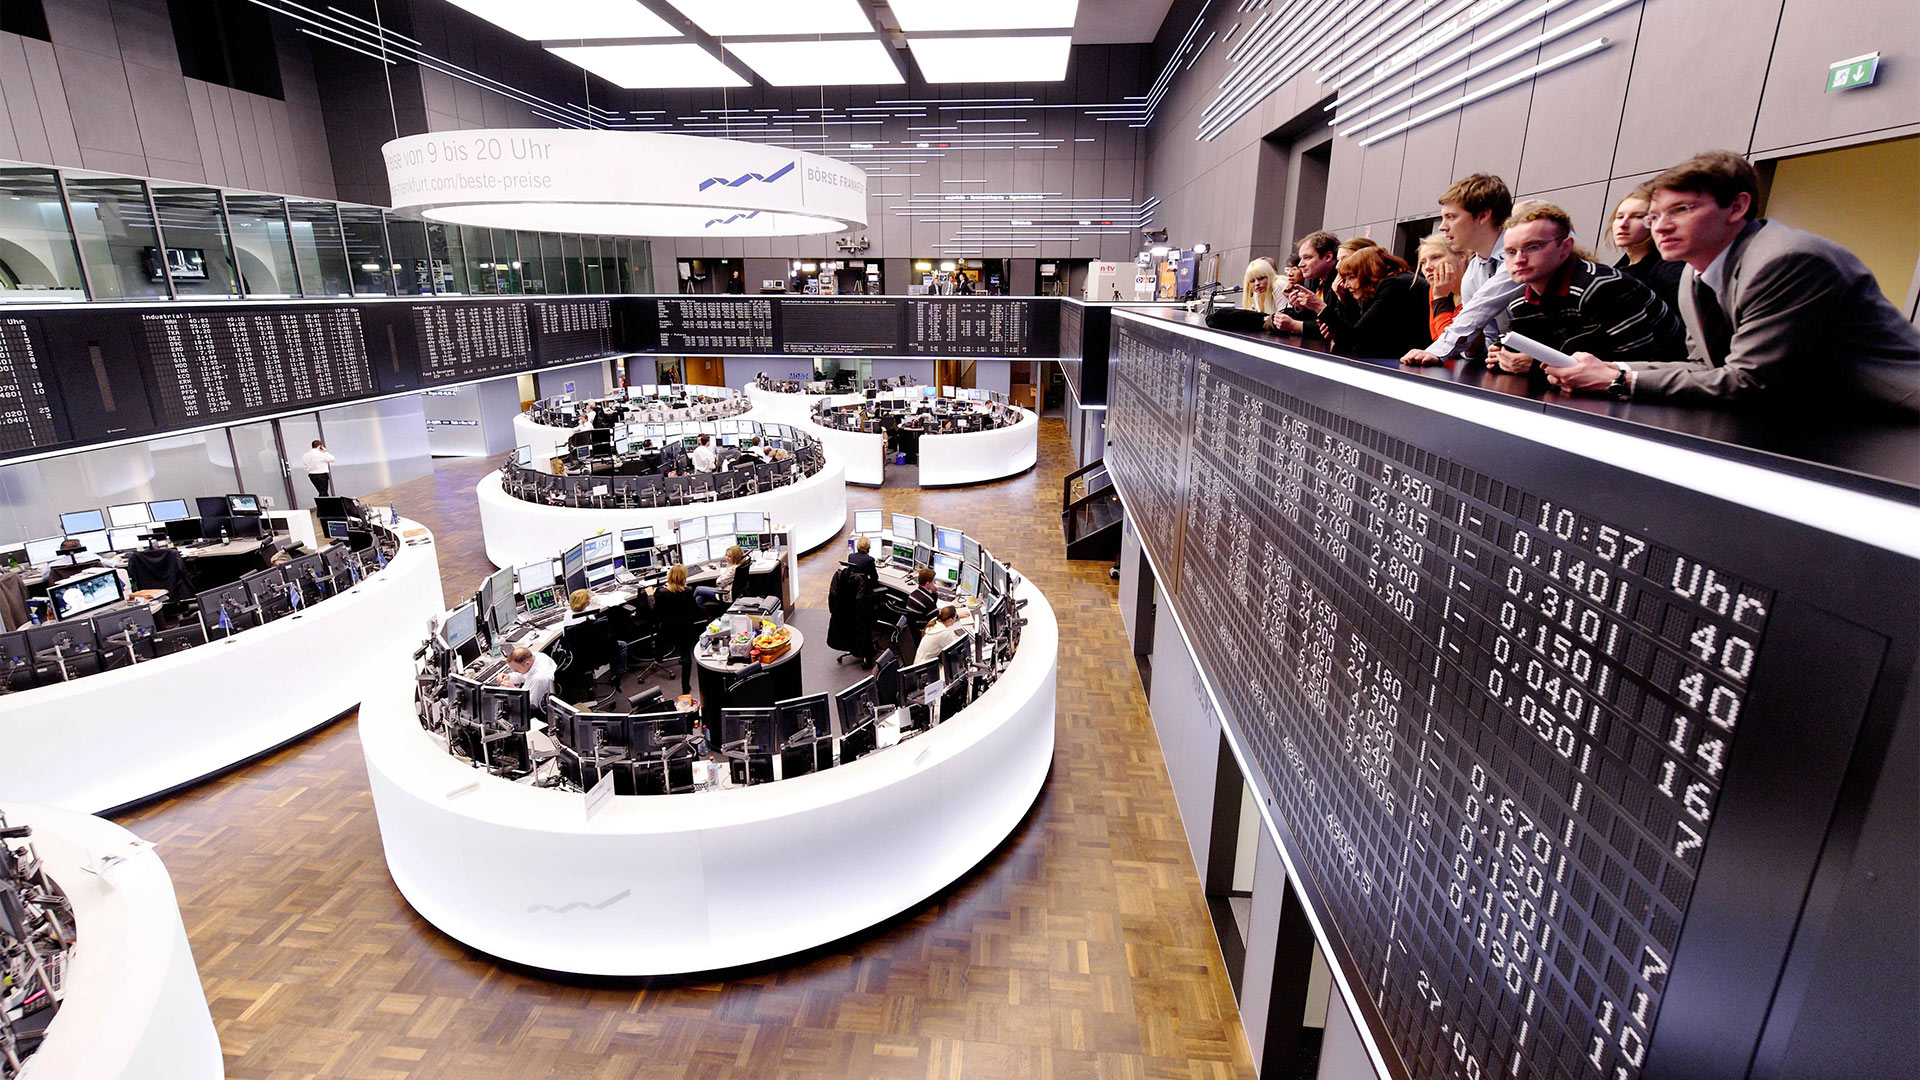 Besucher auf der Galerie des Handelssaals der Börse Frankfurt